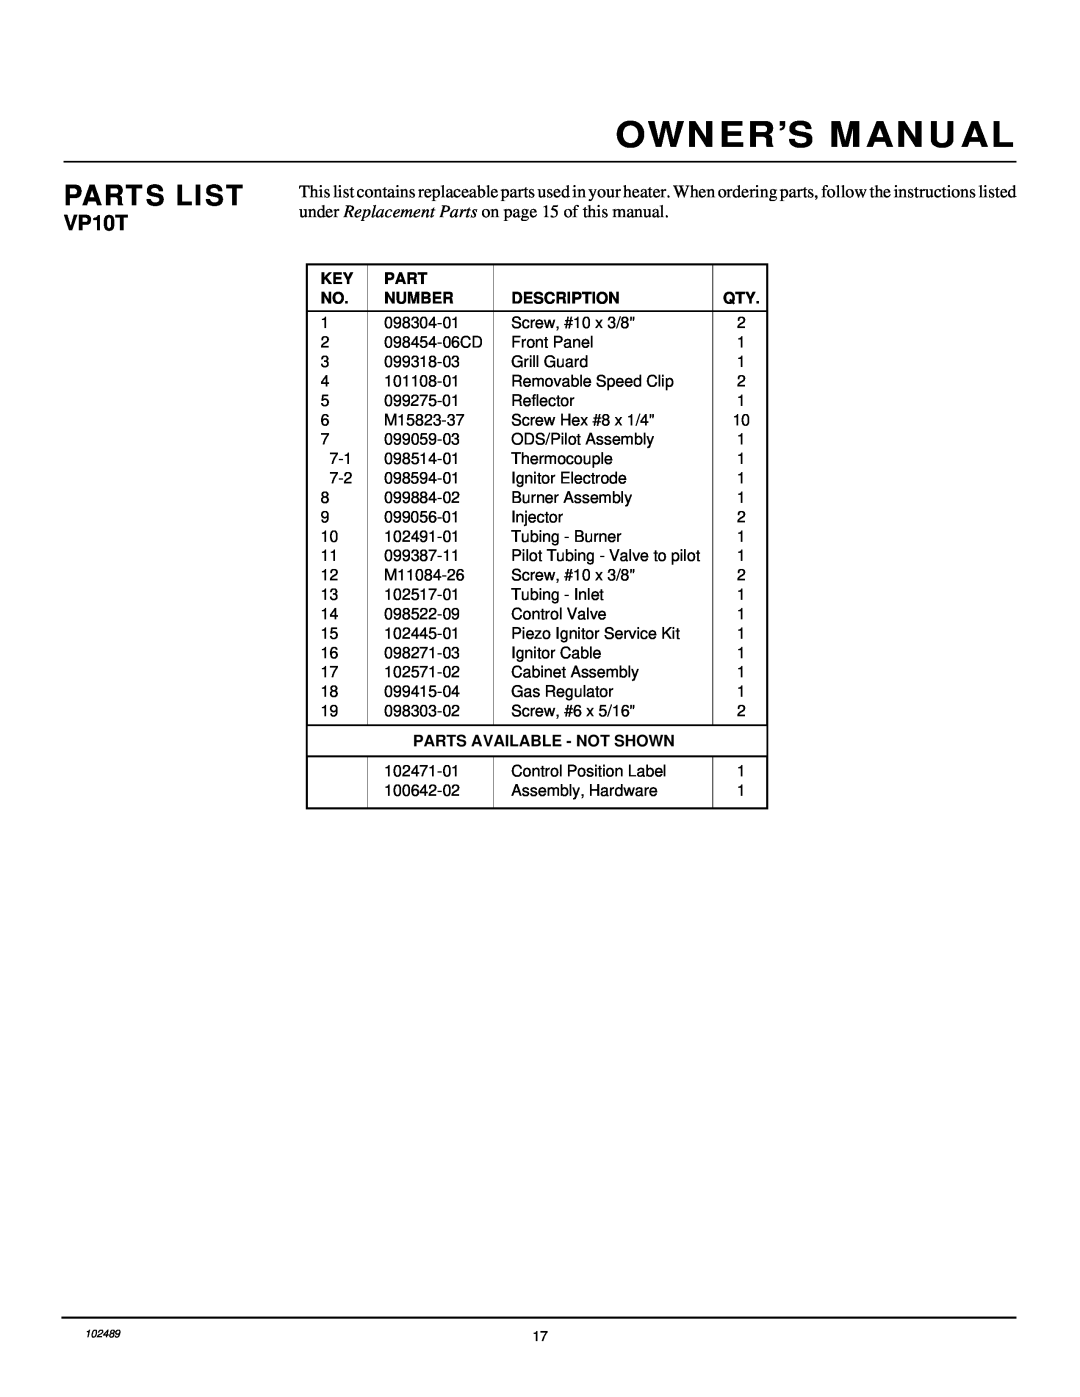 Desa VP10T installation manual Parts List, Number, Description, Parts Available - Not Shown 